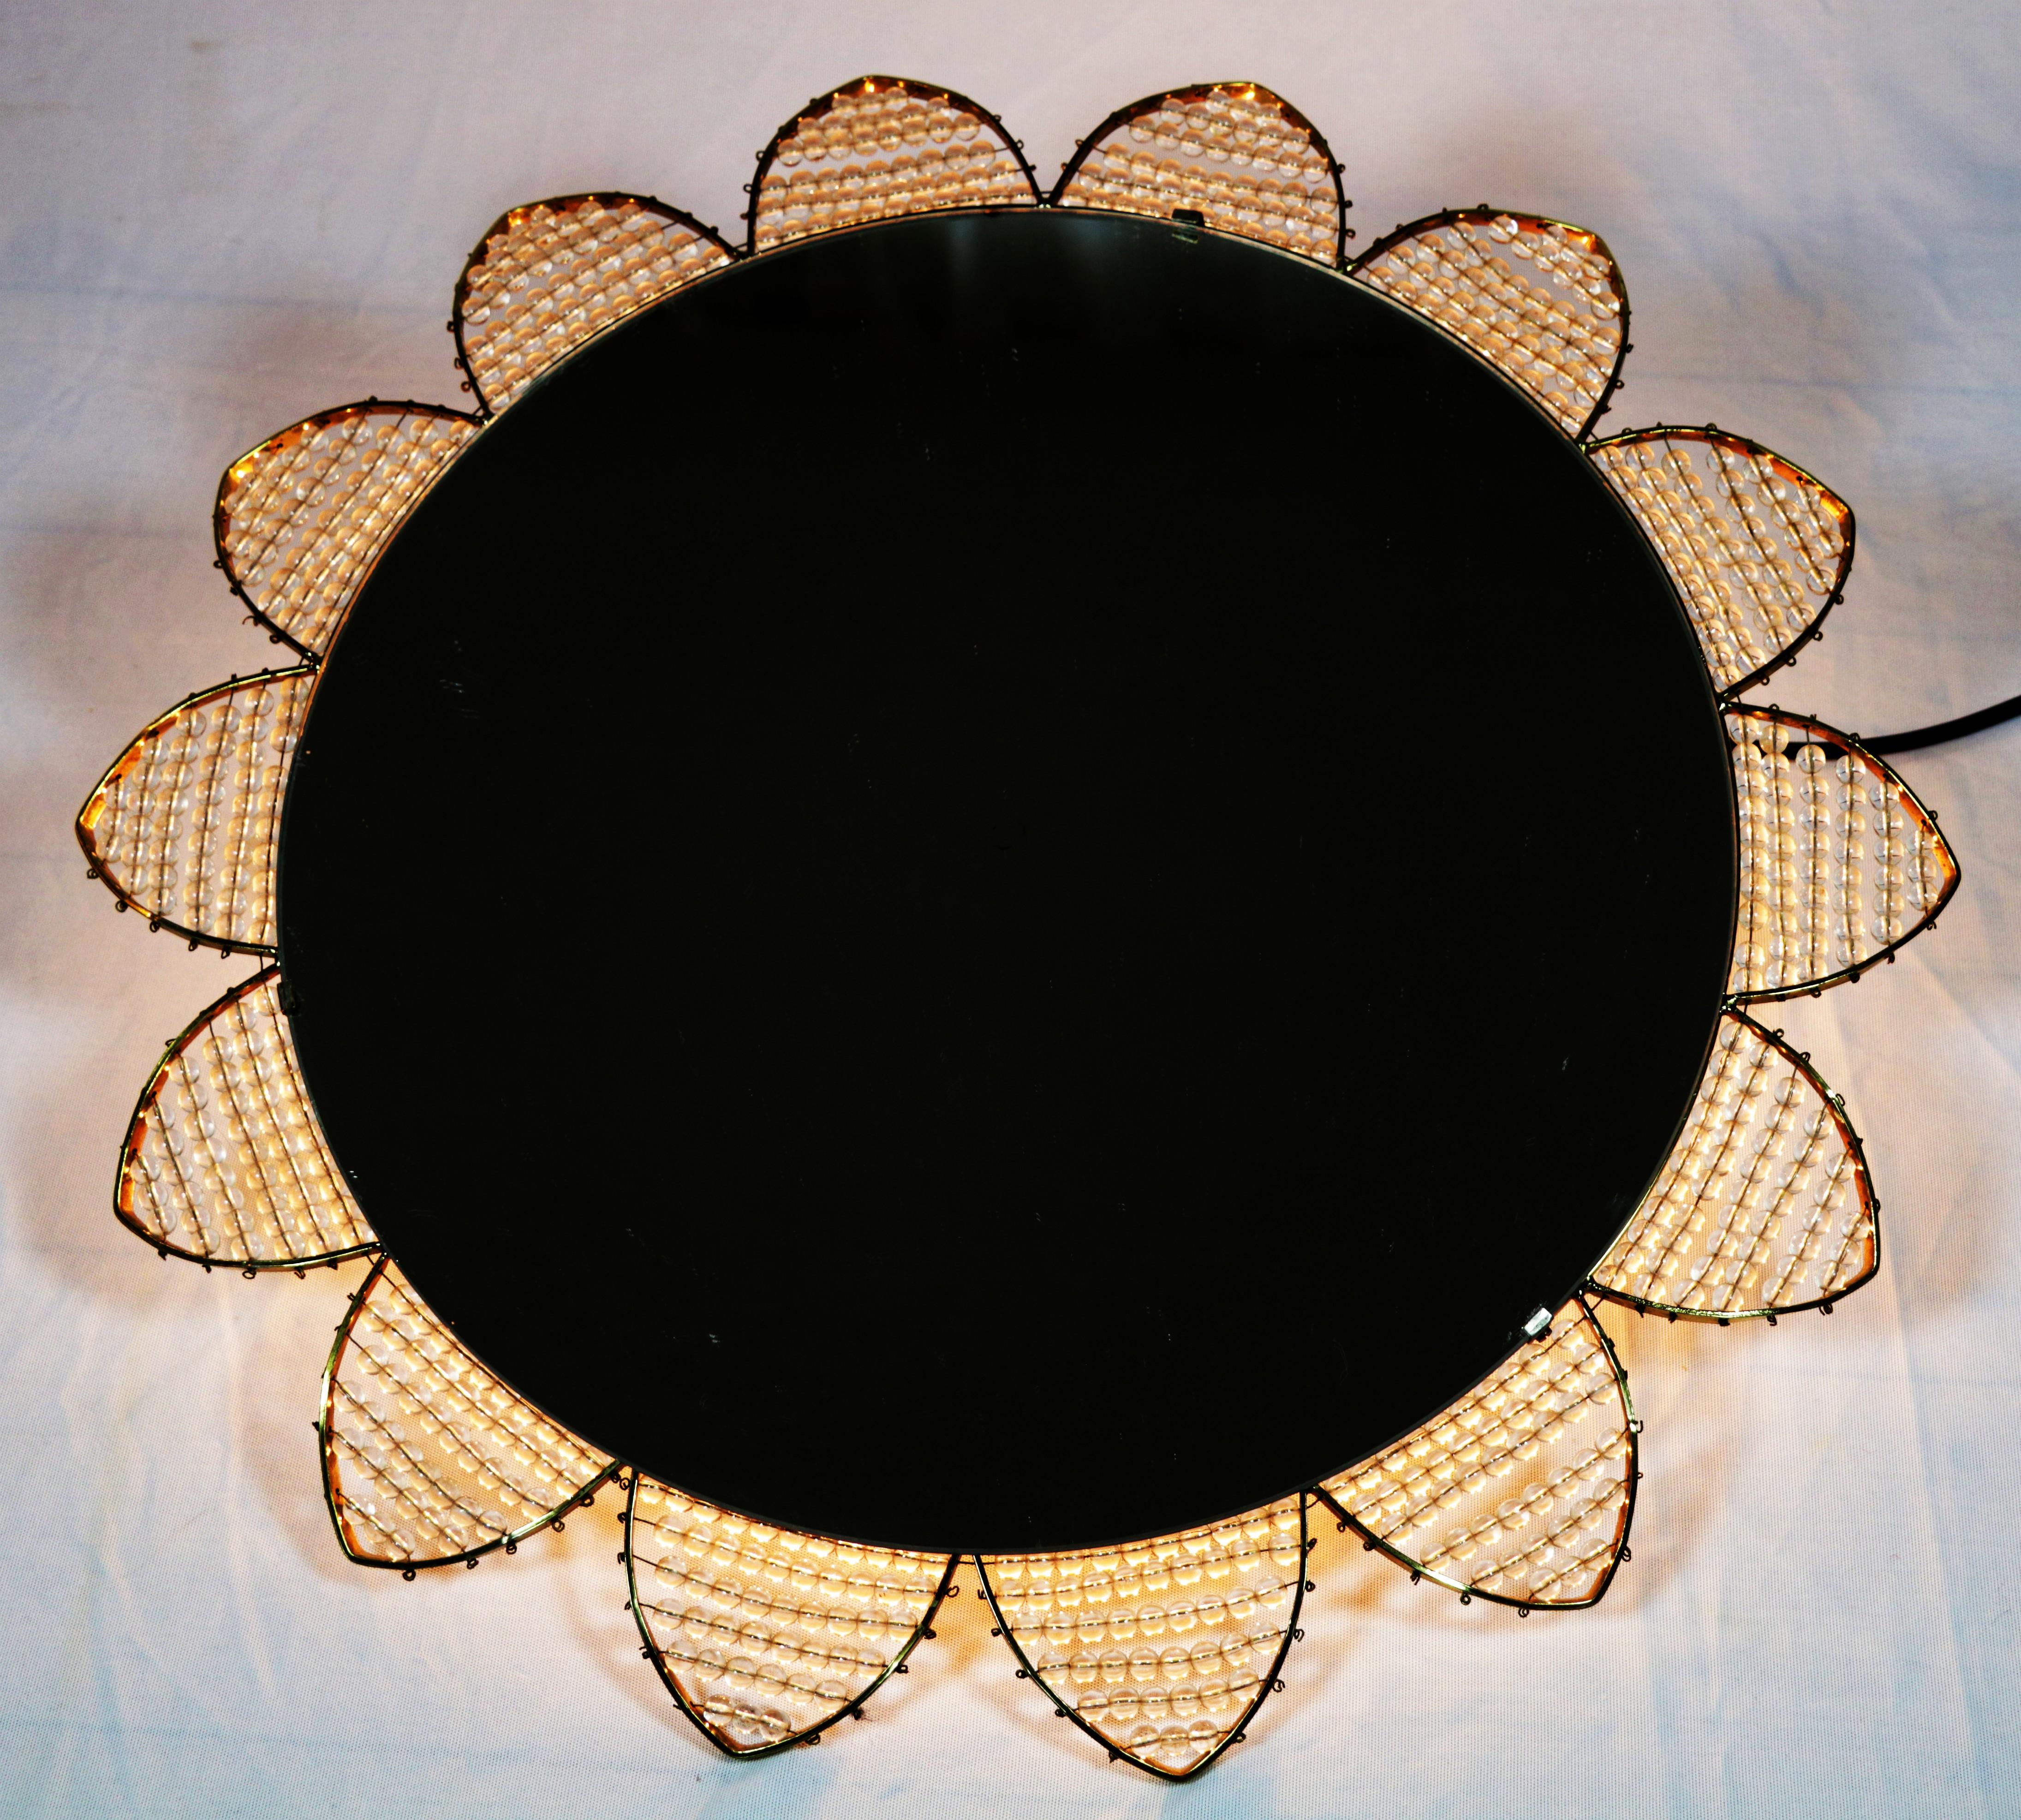 Exceptionnel miroir lumineux des années 1960.
En forme d'étoile ou de fleur. Design/One.

Les perles en acrylique sont alignées sur un cadre en laiton.

Douilles avec 6 ampoules E14. Des adaptateurs pour les États-Unis sont inclus.

Très